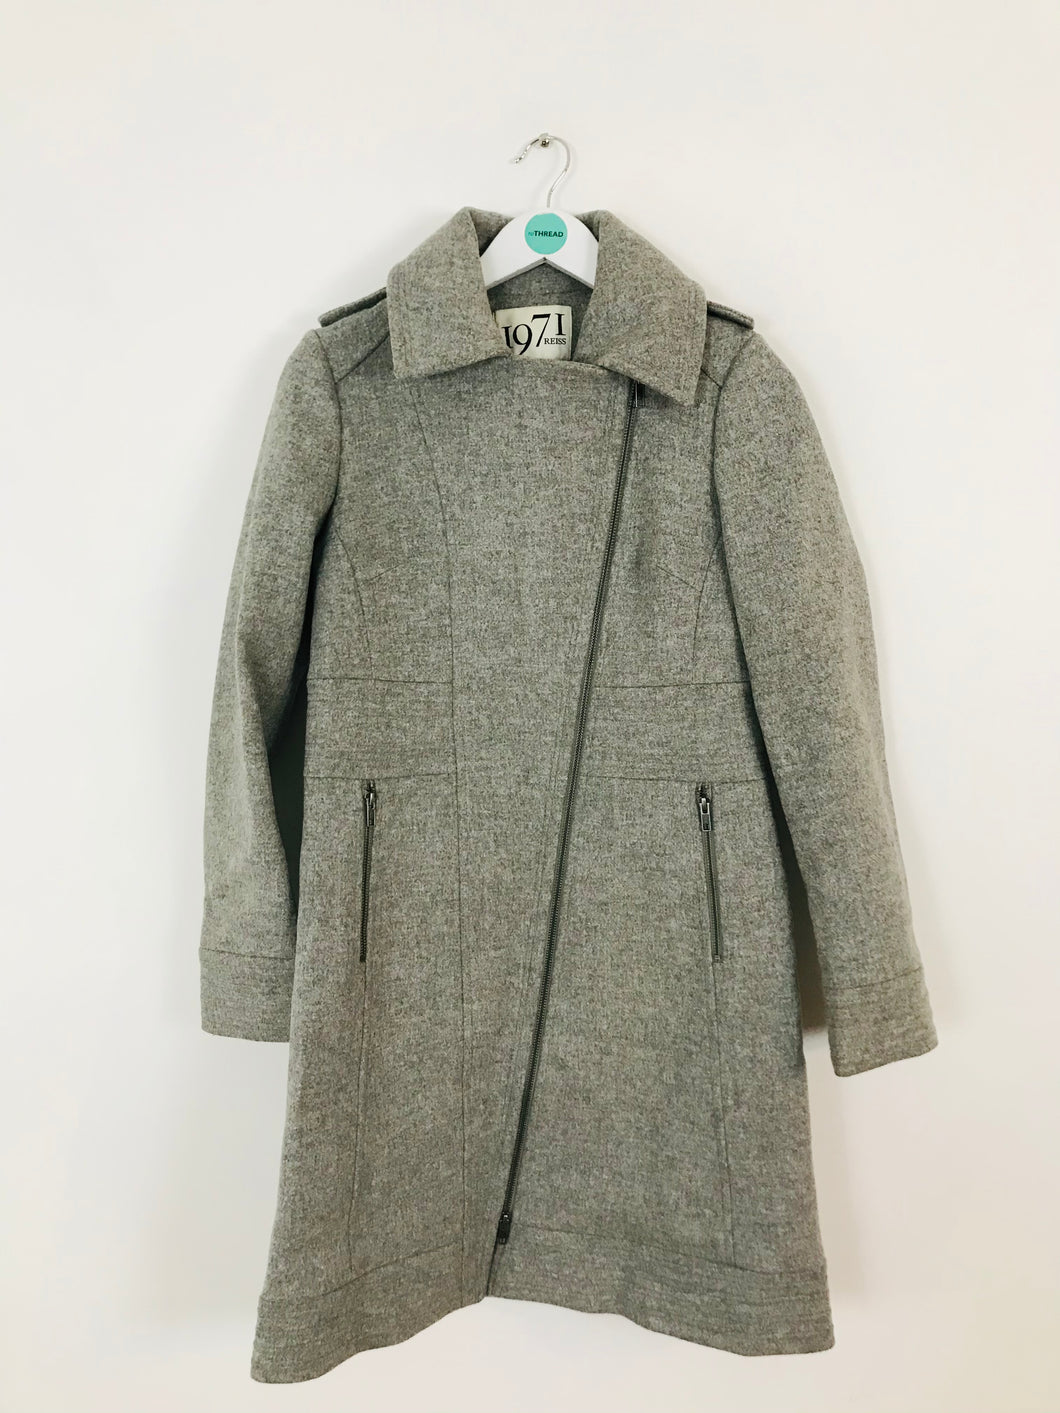 Reiss 1971 Women’s Wool Longline Overcoat | S UK8 | Grey